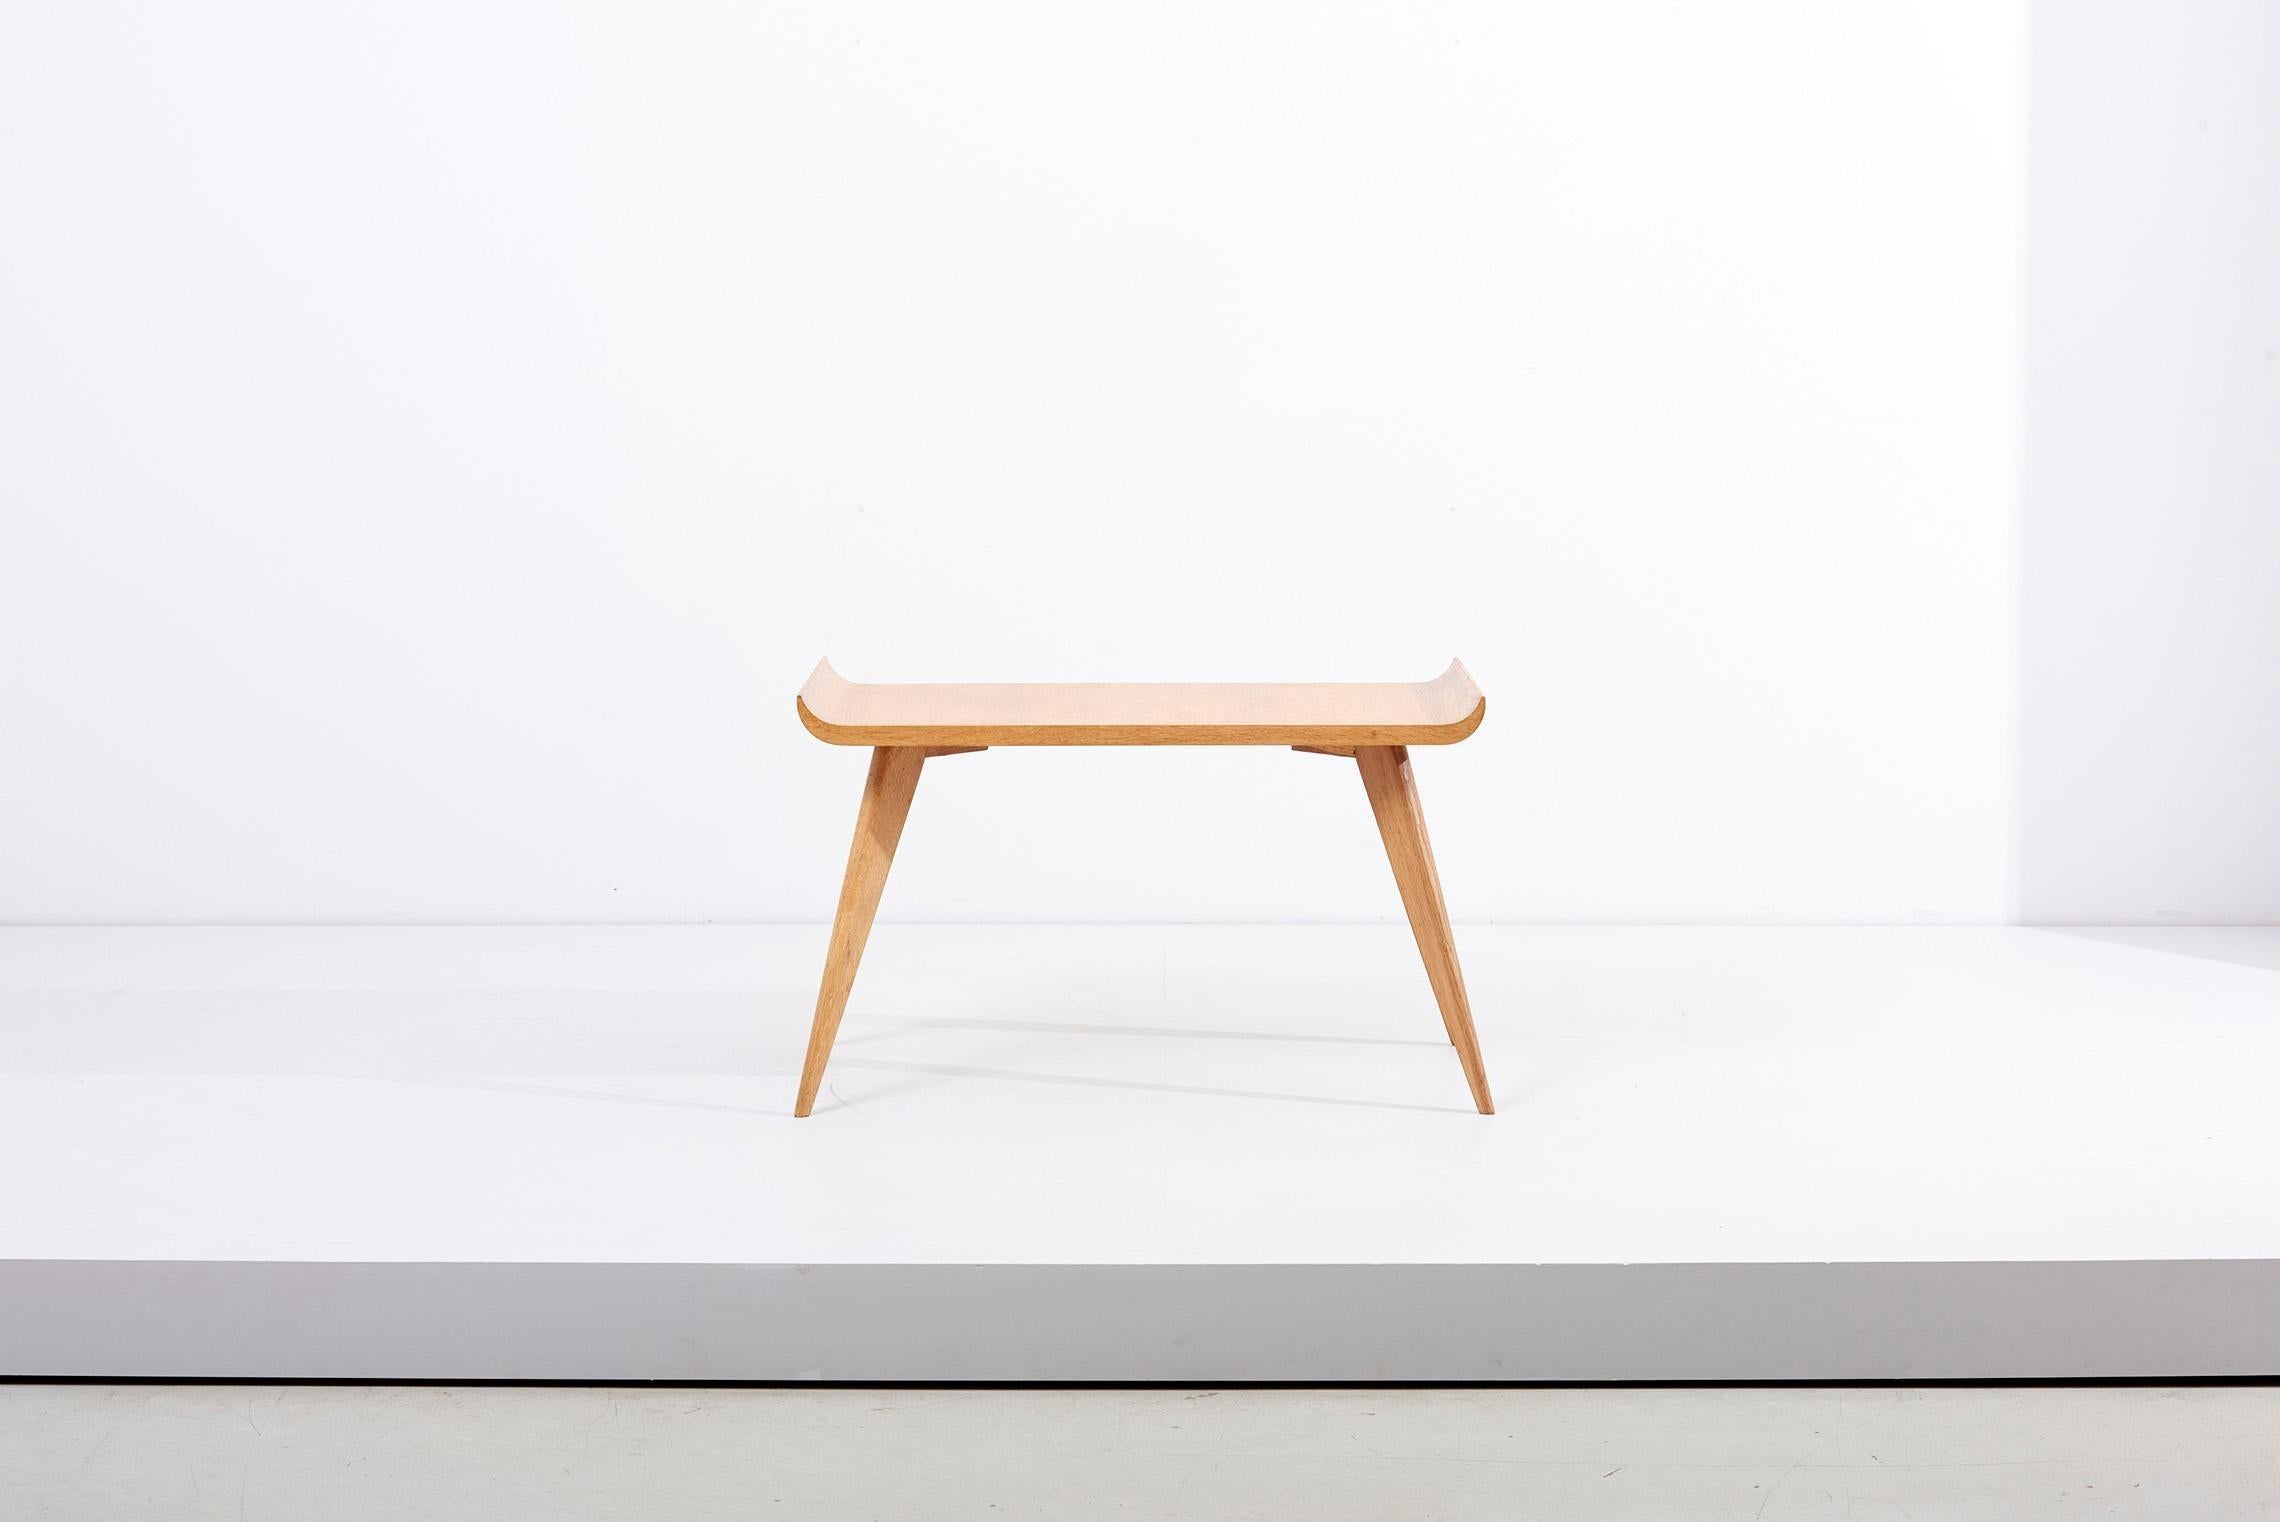 Très élégante table d'appoint ou table basse en forme de Pagode en excellent état. Les pieds massifs sont un peu à la manière de Jean Prouvé.

